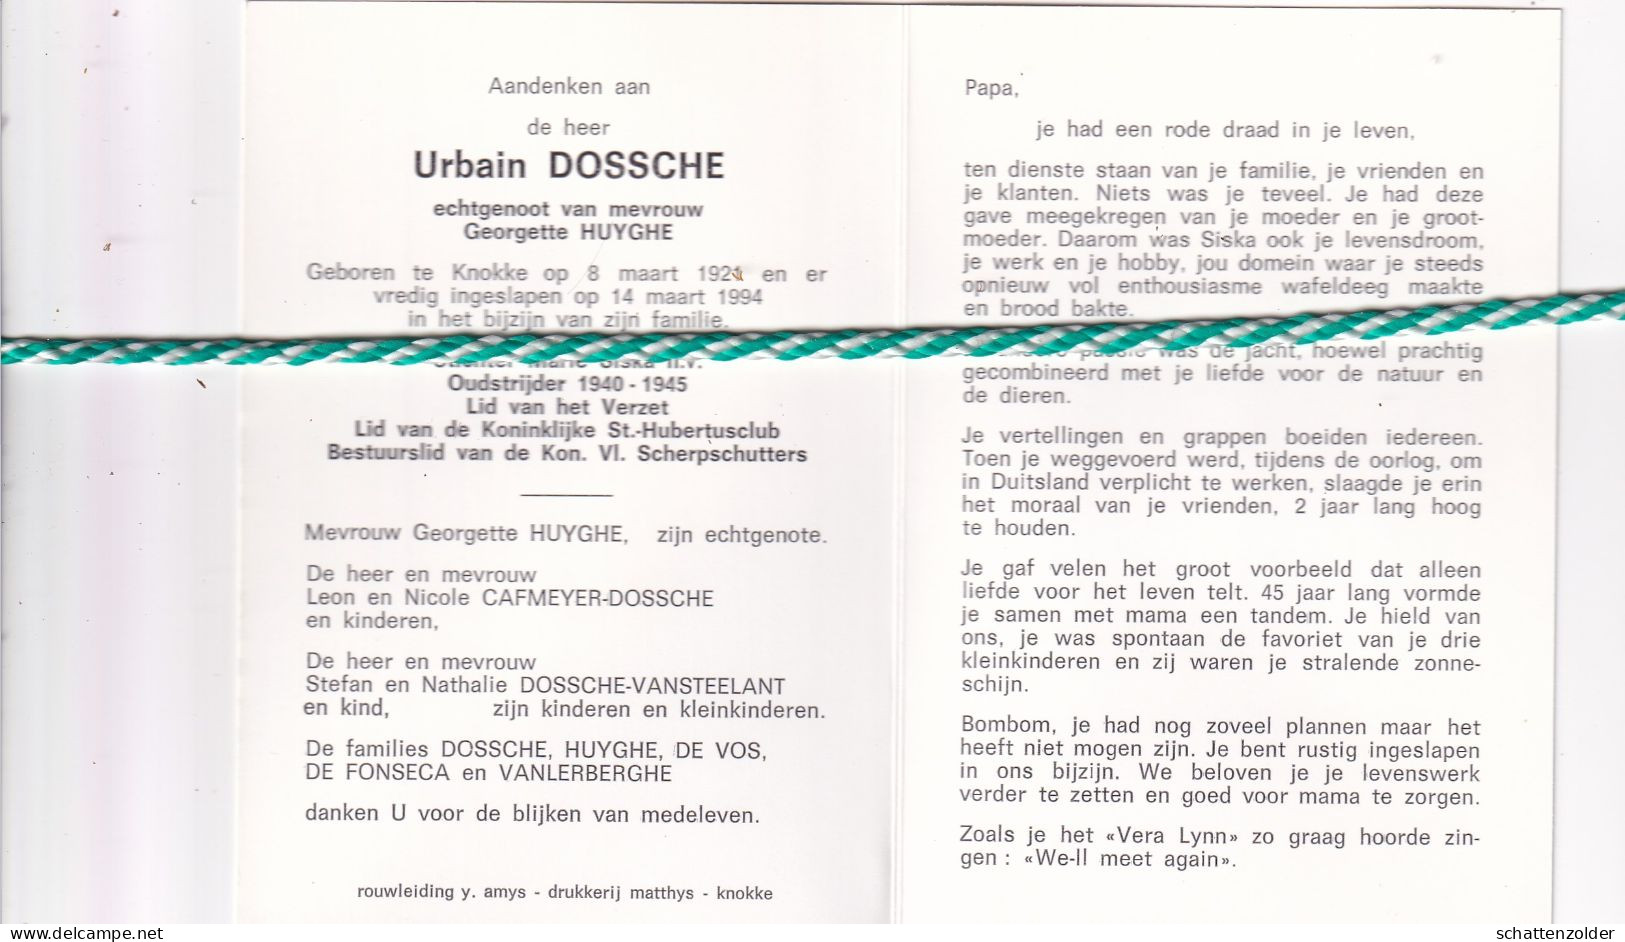 Urbain Dossche-Huyghe, Knokke 1921, 1994. Stichter Nv Marie Siska, Oud-strijder 40-45. Foto - Esquela